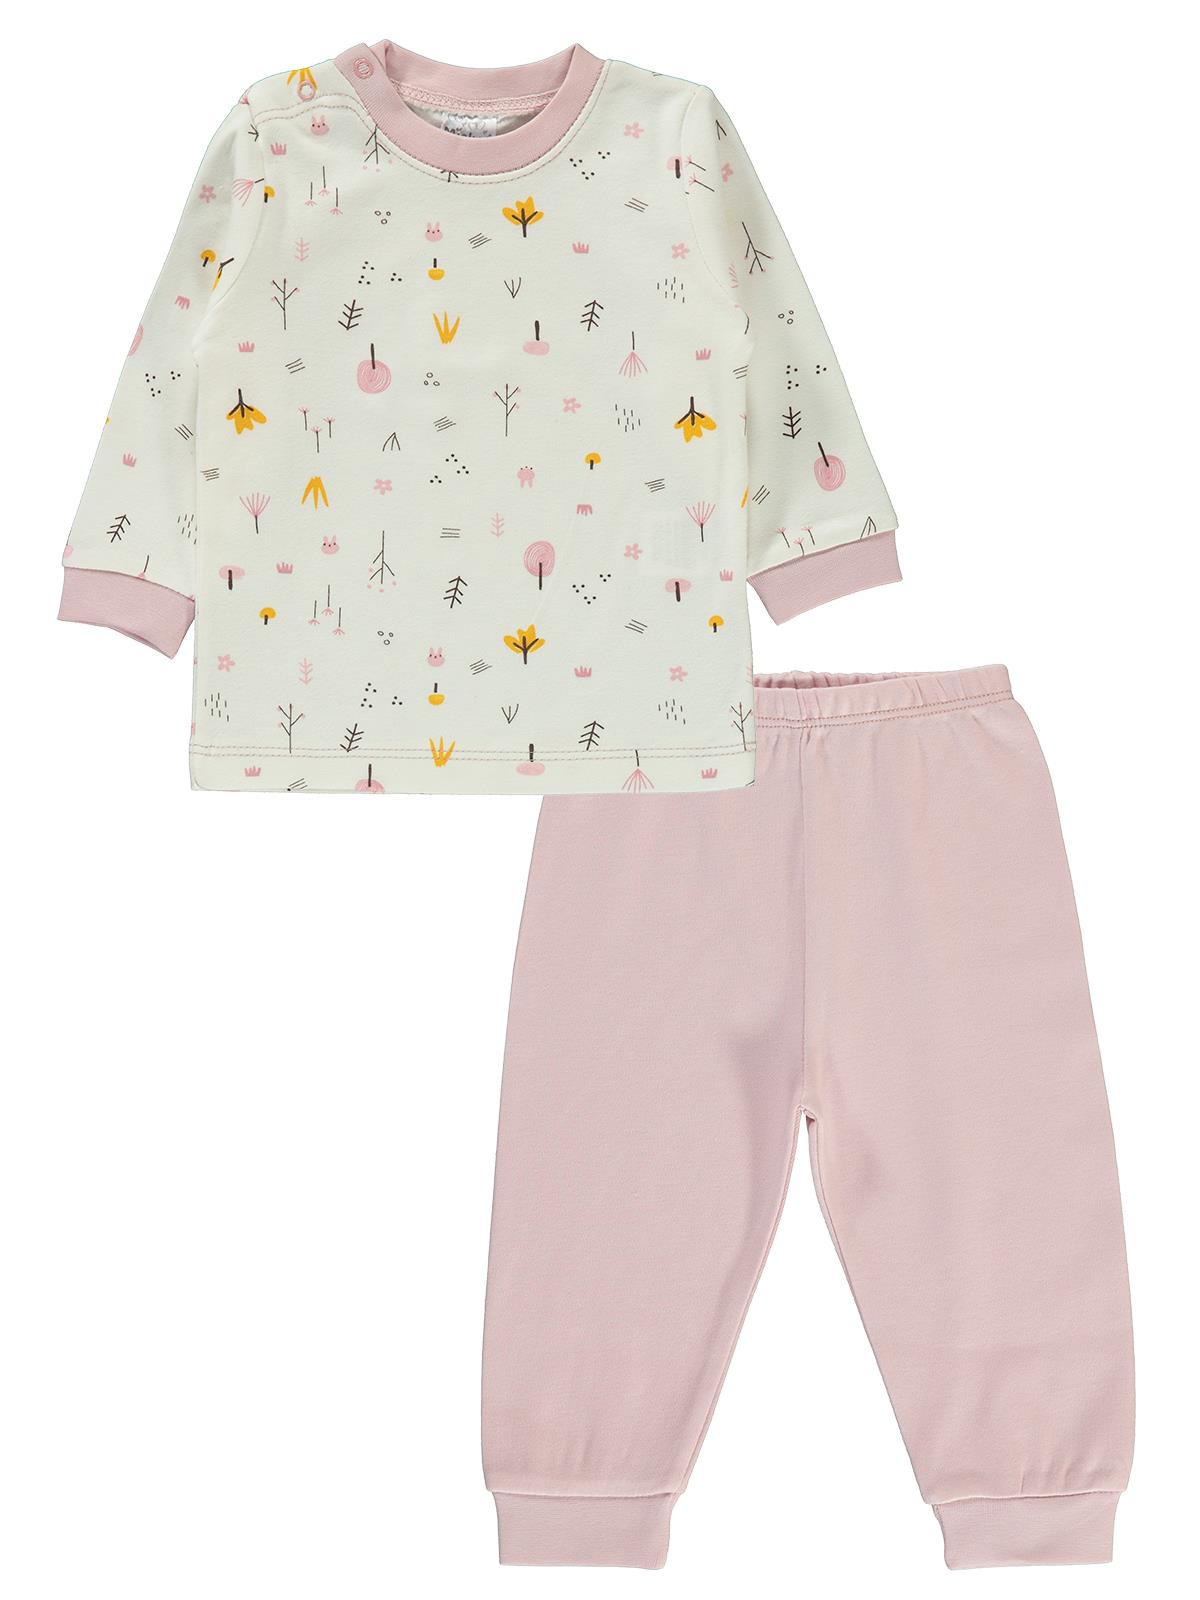 Misket Kız Bebek Pijama Takımı 6-12 Ay Pudra